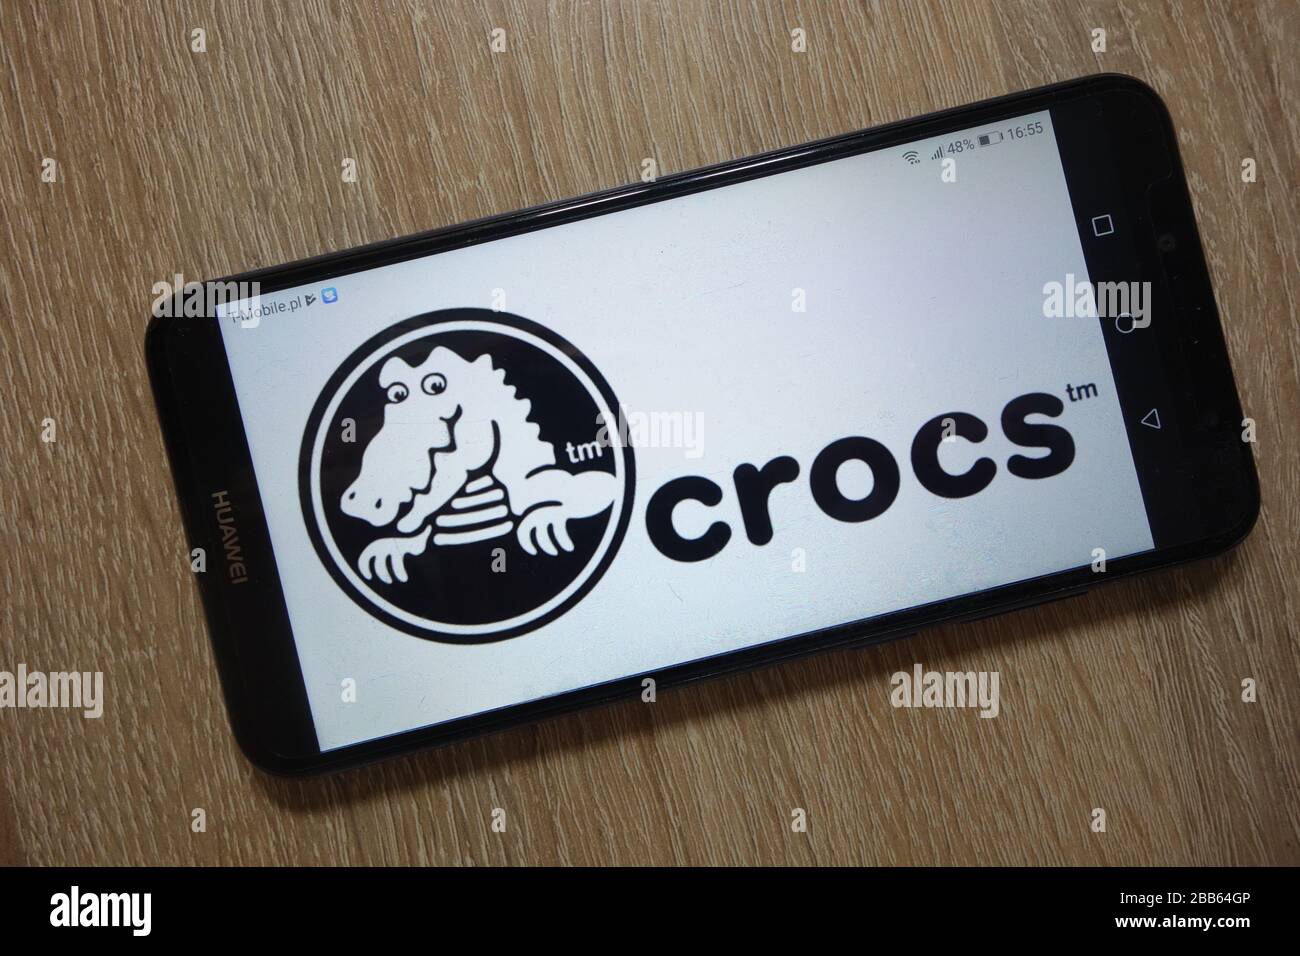 Das Logo von Crocs, Inc. Wird auf dem Smartphone angezeigt Stockfoto